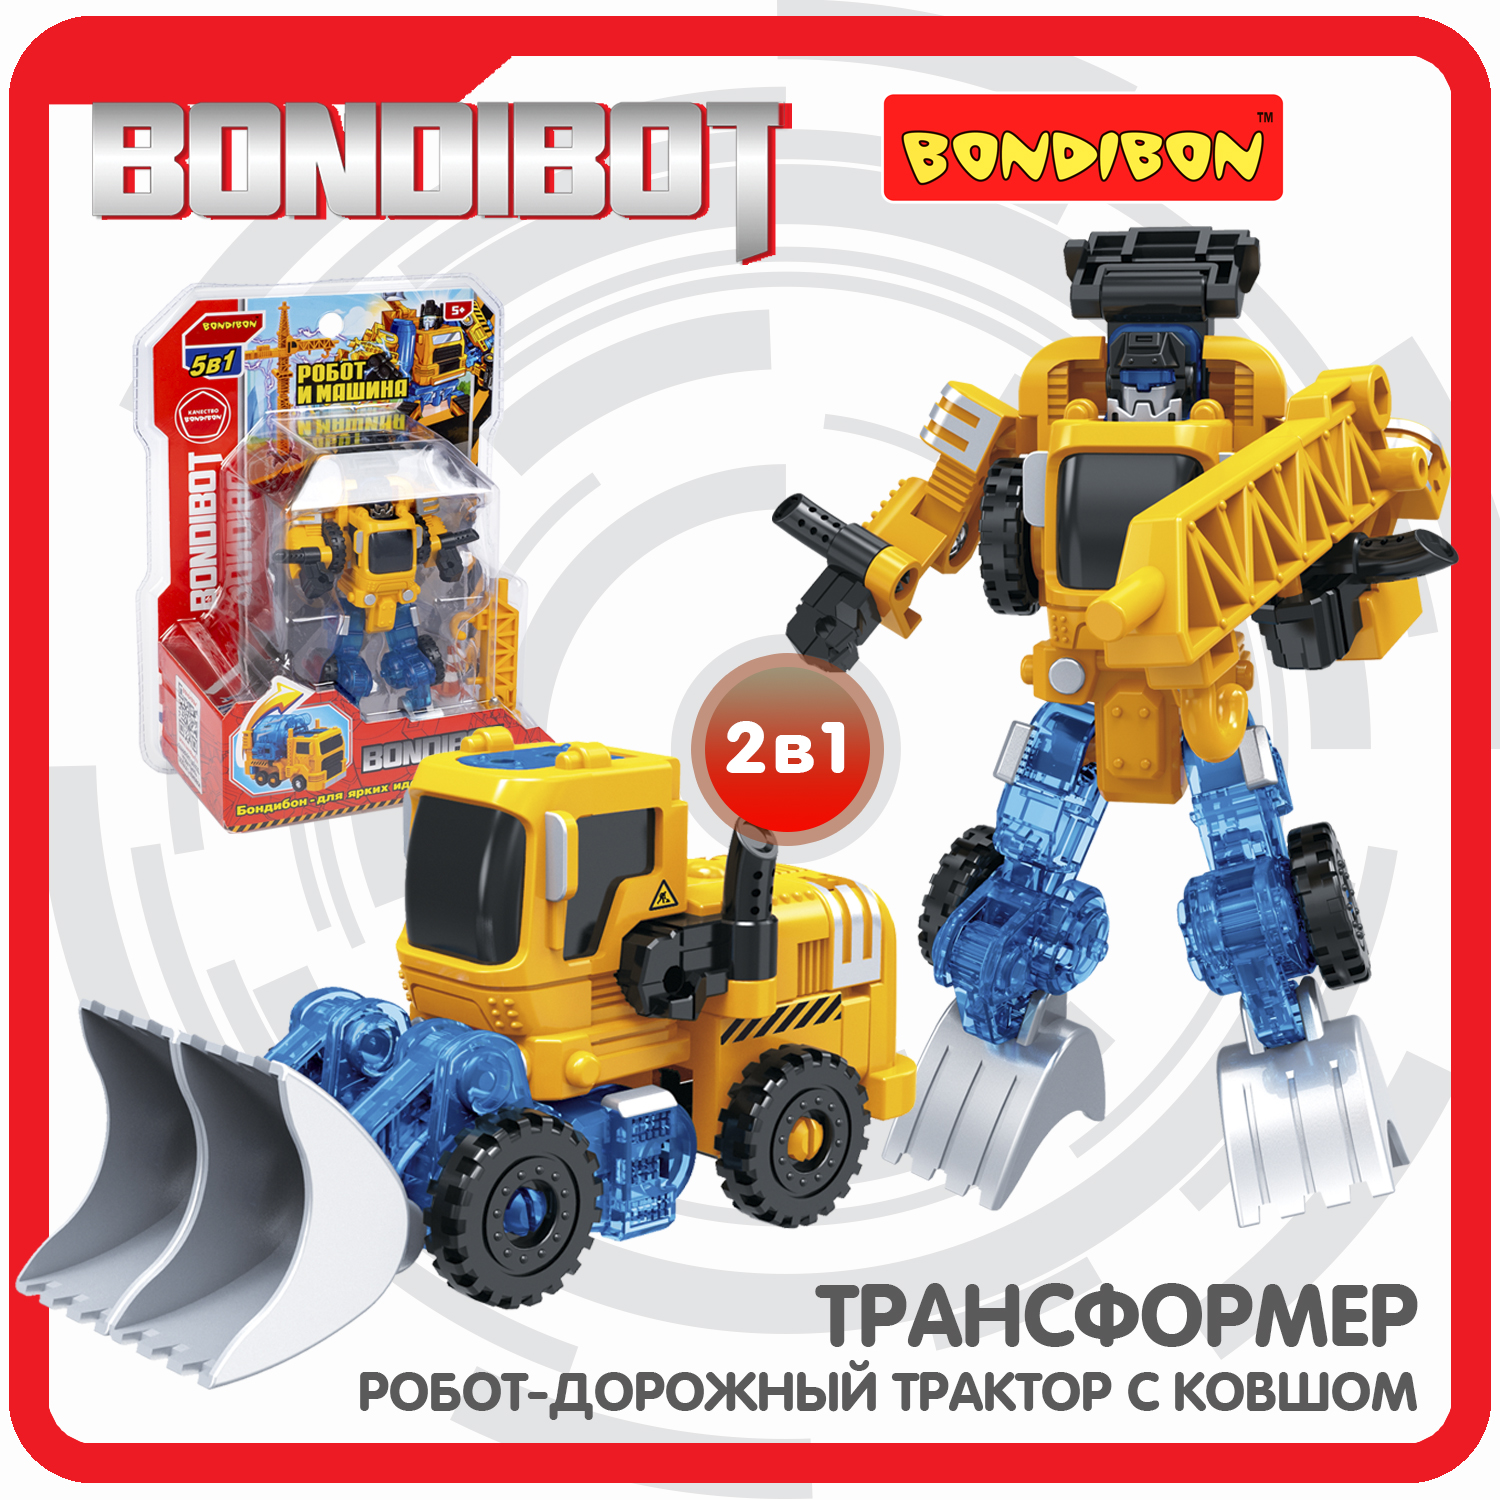 Трансформер 2в1 BONDIBOT Bondibon робот-строит.техника дорож.трактор с ковшом CRD20x15x8см pilsan бульдозер с ковшом дозер